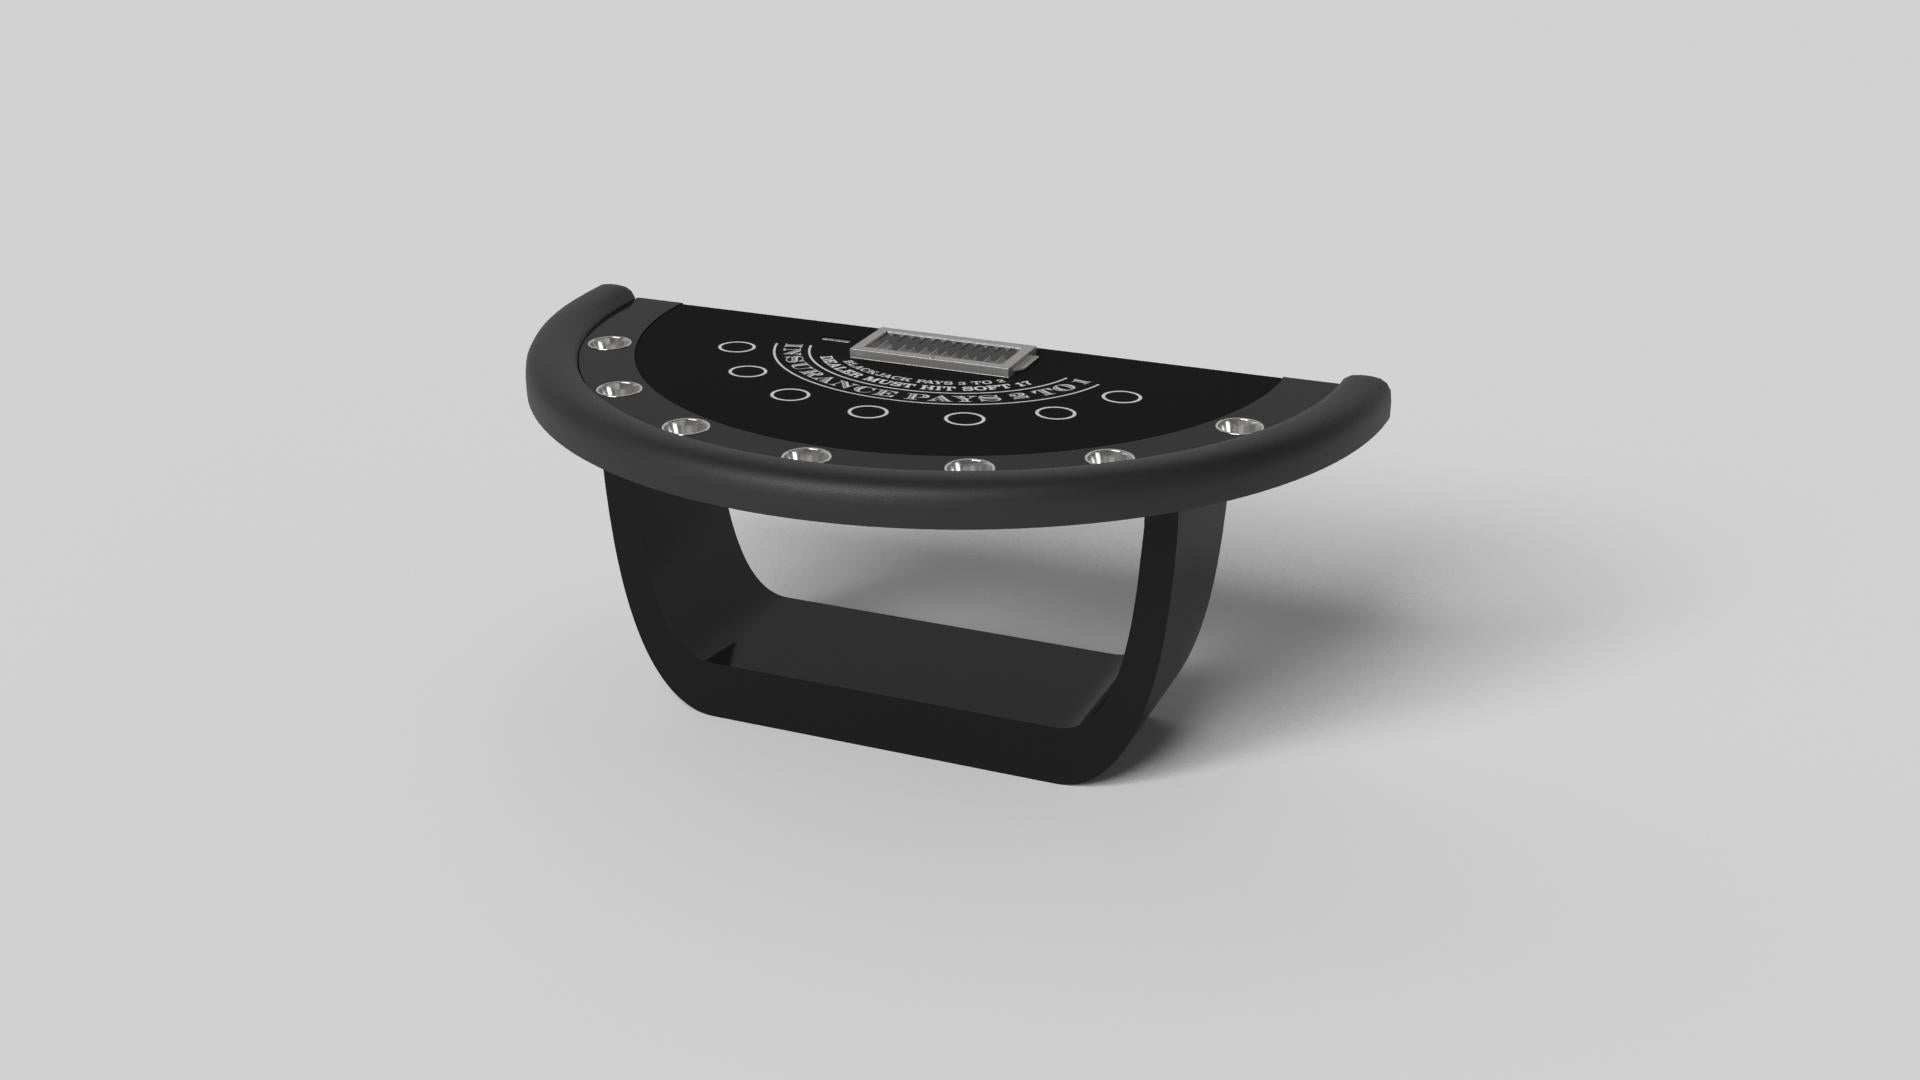 Der handgefertigte Blackjack-Tisch Sid in Schwarz mit seinen raffinierten Akzenten und dem präzise geschwungenen Sockel vereint eine Reihe von glatten Kanten, markanten Details und unkonventionellen Elementen zu einem einzigartigen Ausdruck von